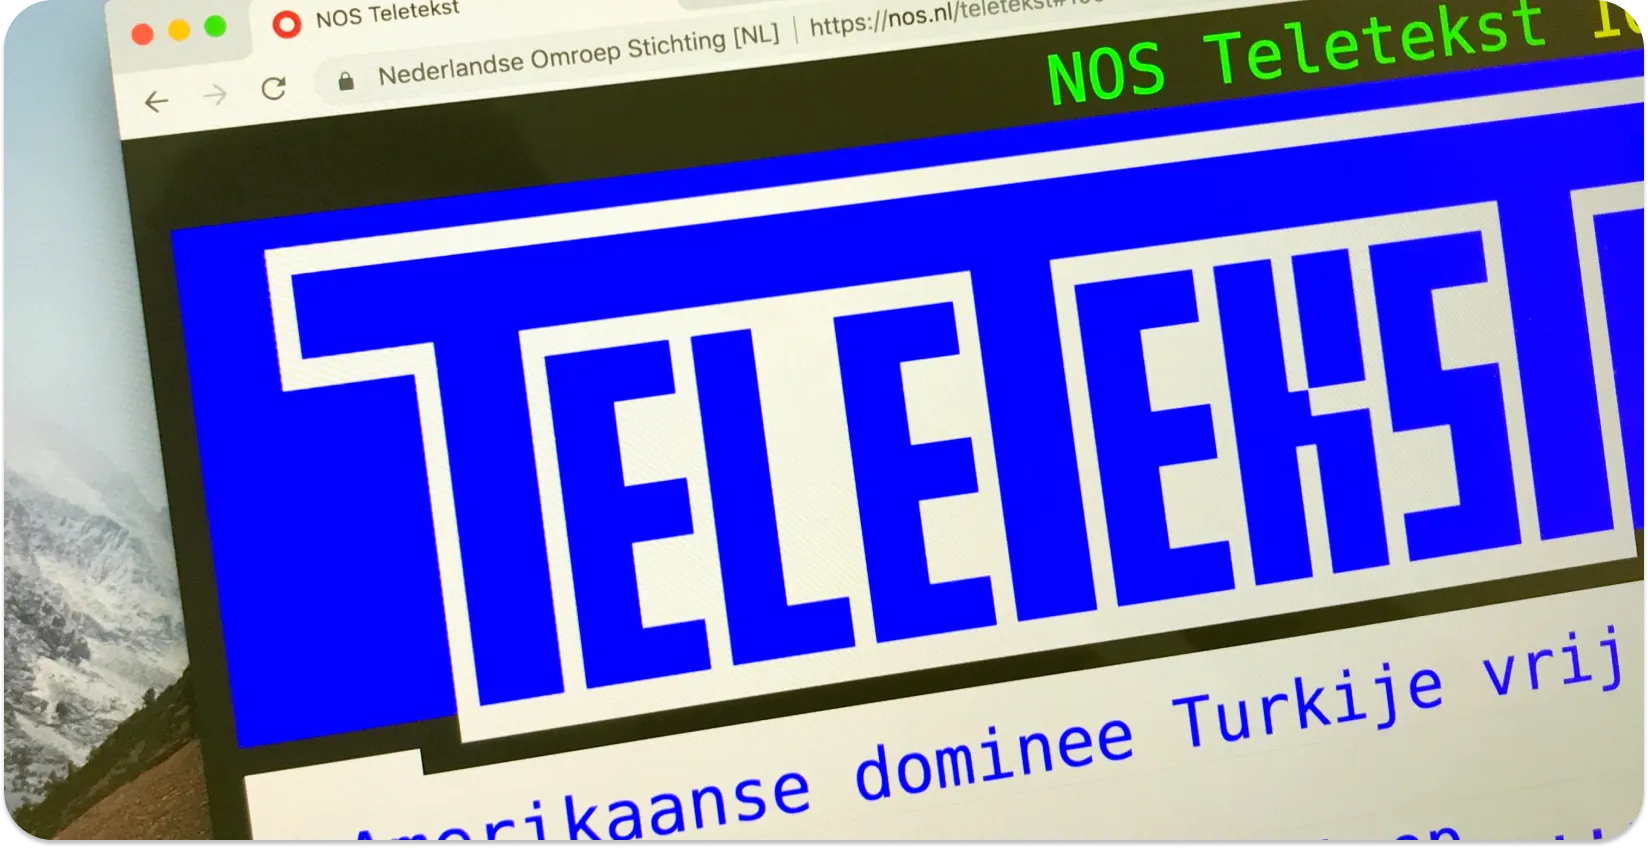 Một màn hình máy tính hiển thị phụ đề Teletext với các tiêu đề tin tức, minh họa cho định dạng phụ đề teletext.